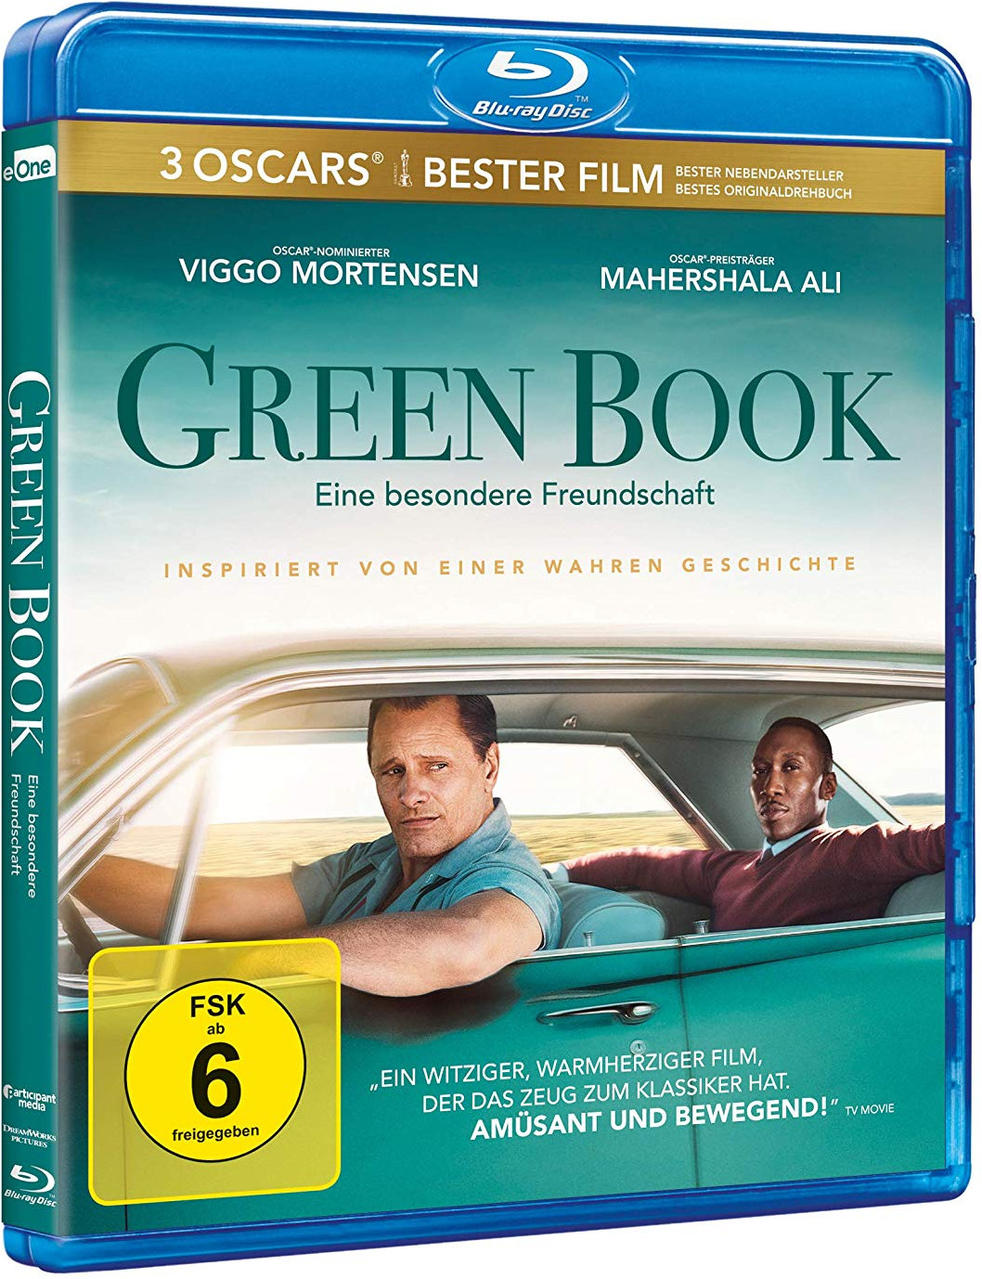 Green Book - Eine besondere Blu-ray Freundschaft